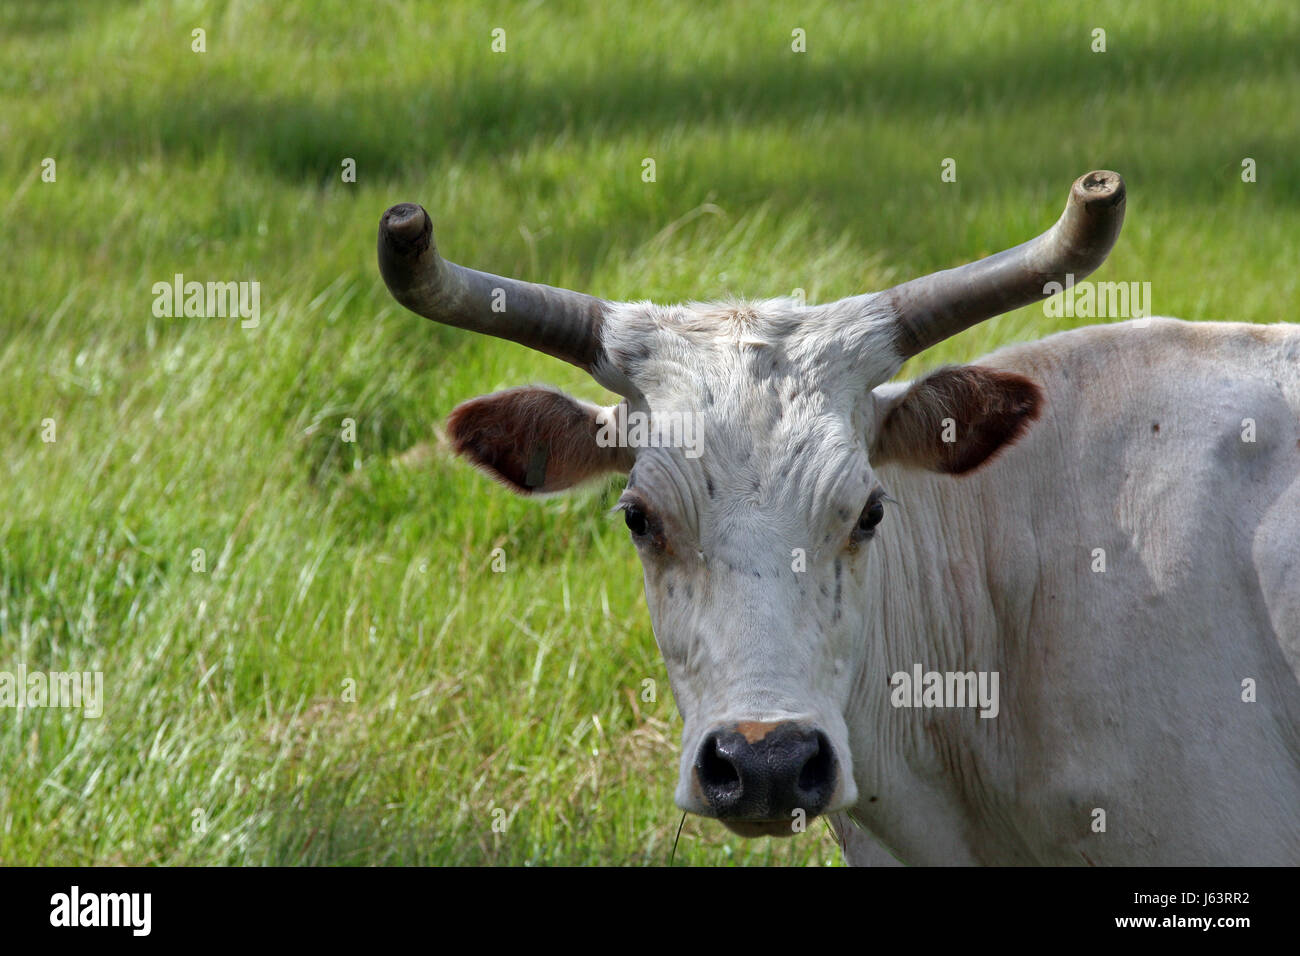 Jetant un coup d'oeil usa bull voir voir à jeter à la ferme bovine à cornets Banque D'Images